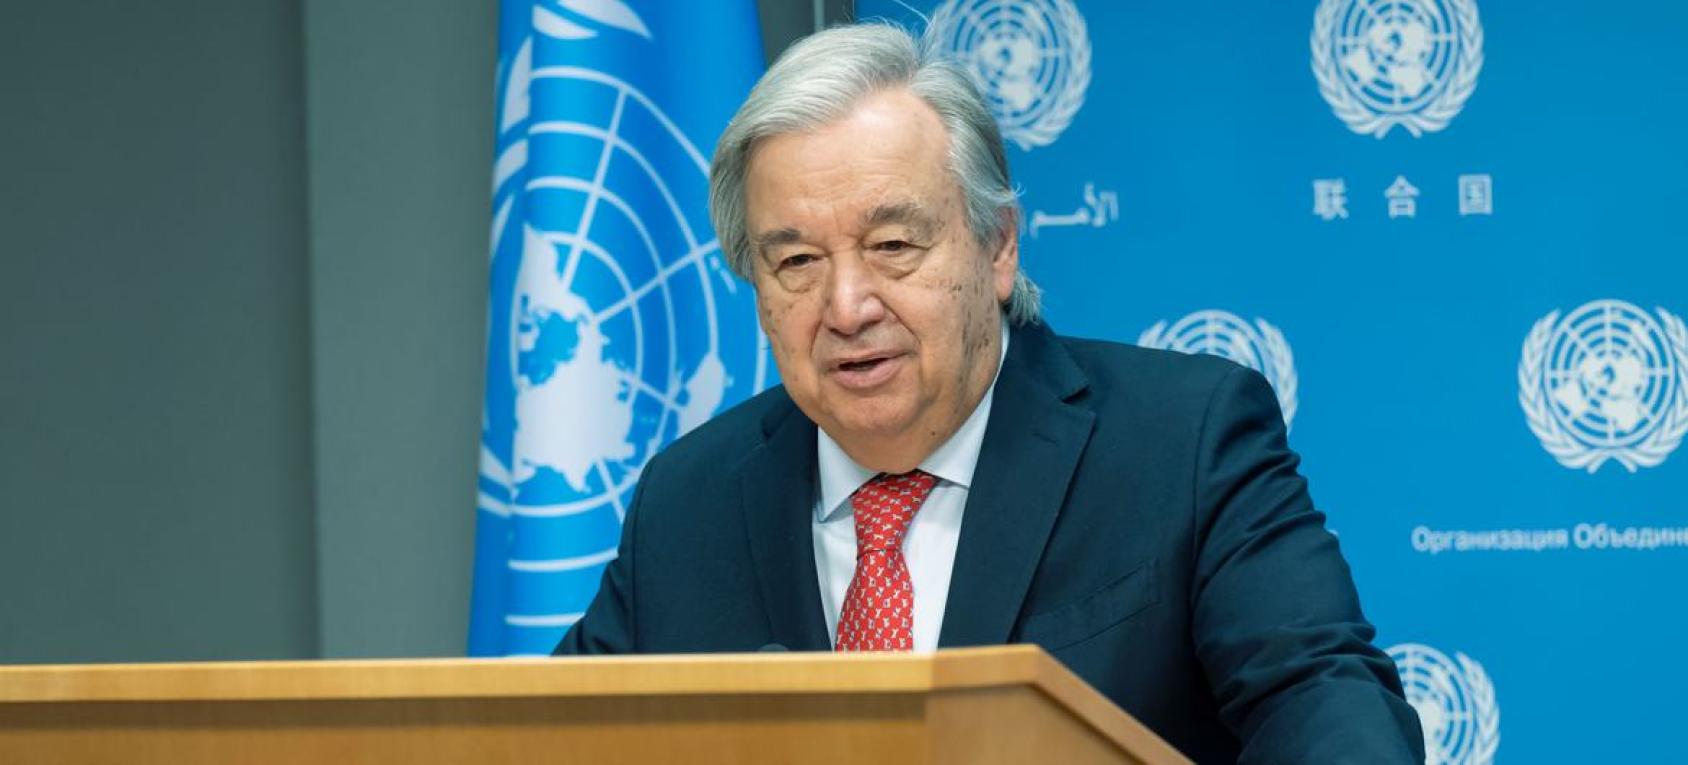 El Secretario General António Guterres informa a los periodistas sobre los últimos acontecimientos en Israel y Gaza.